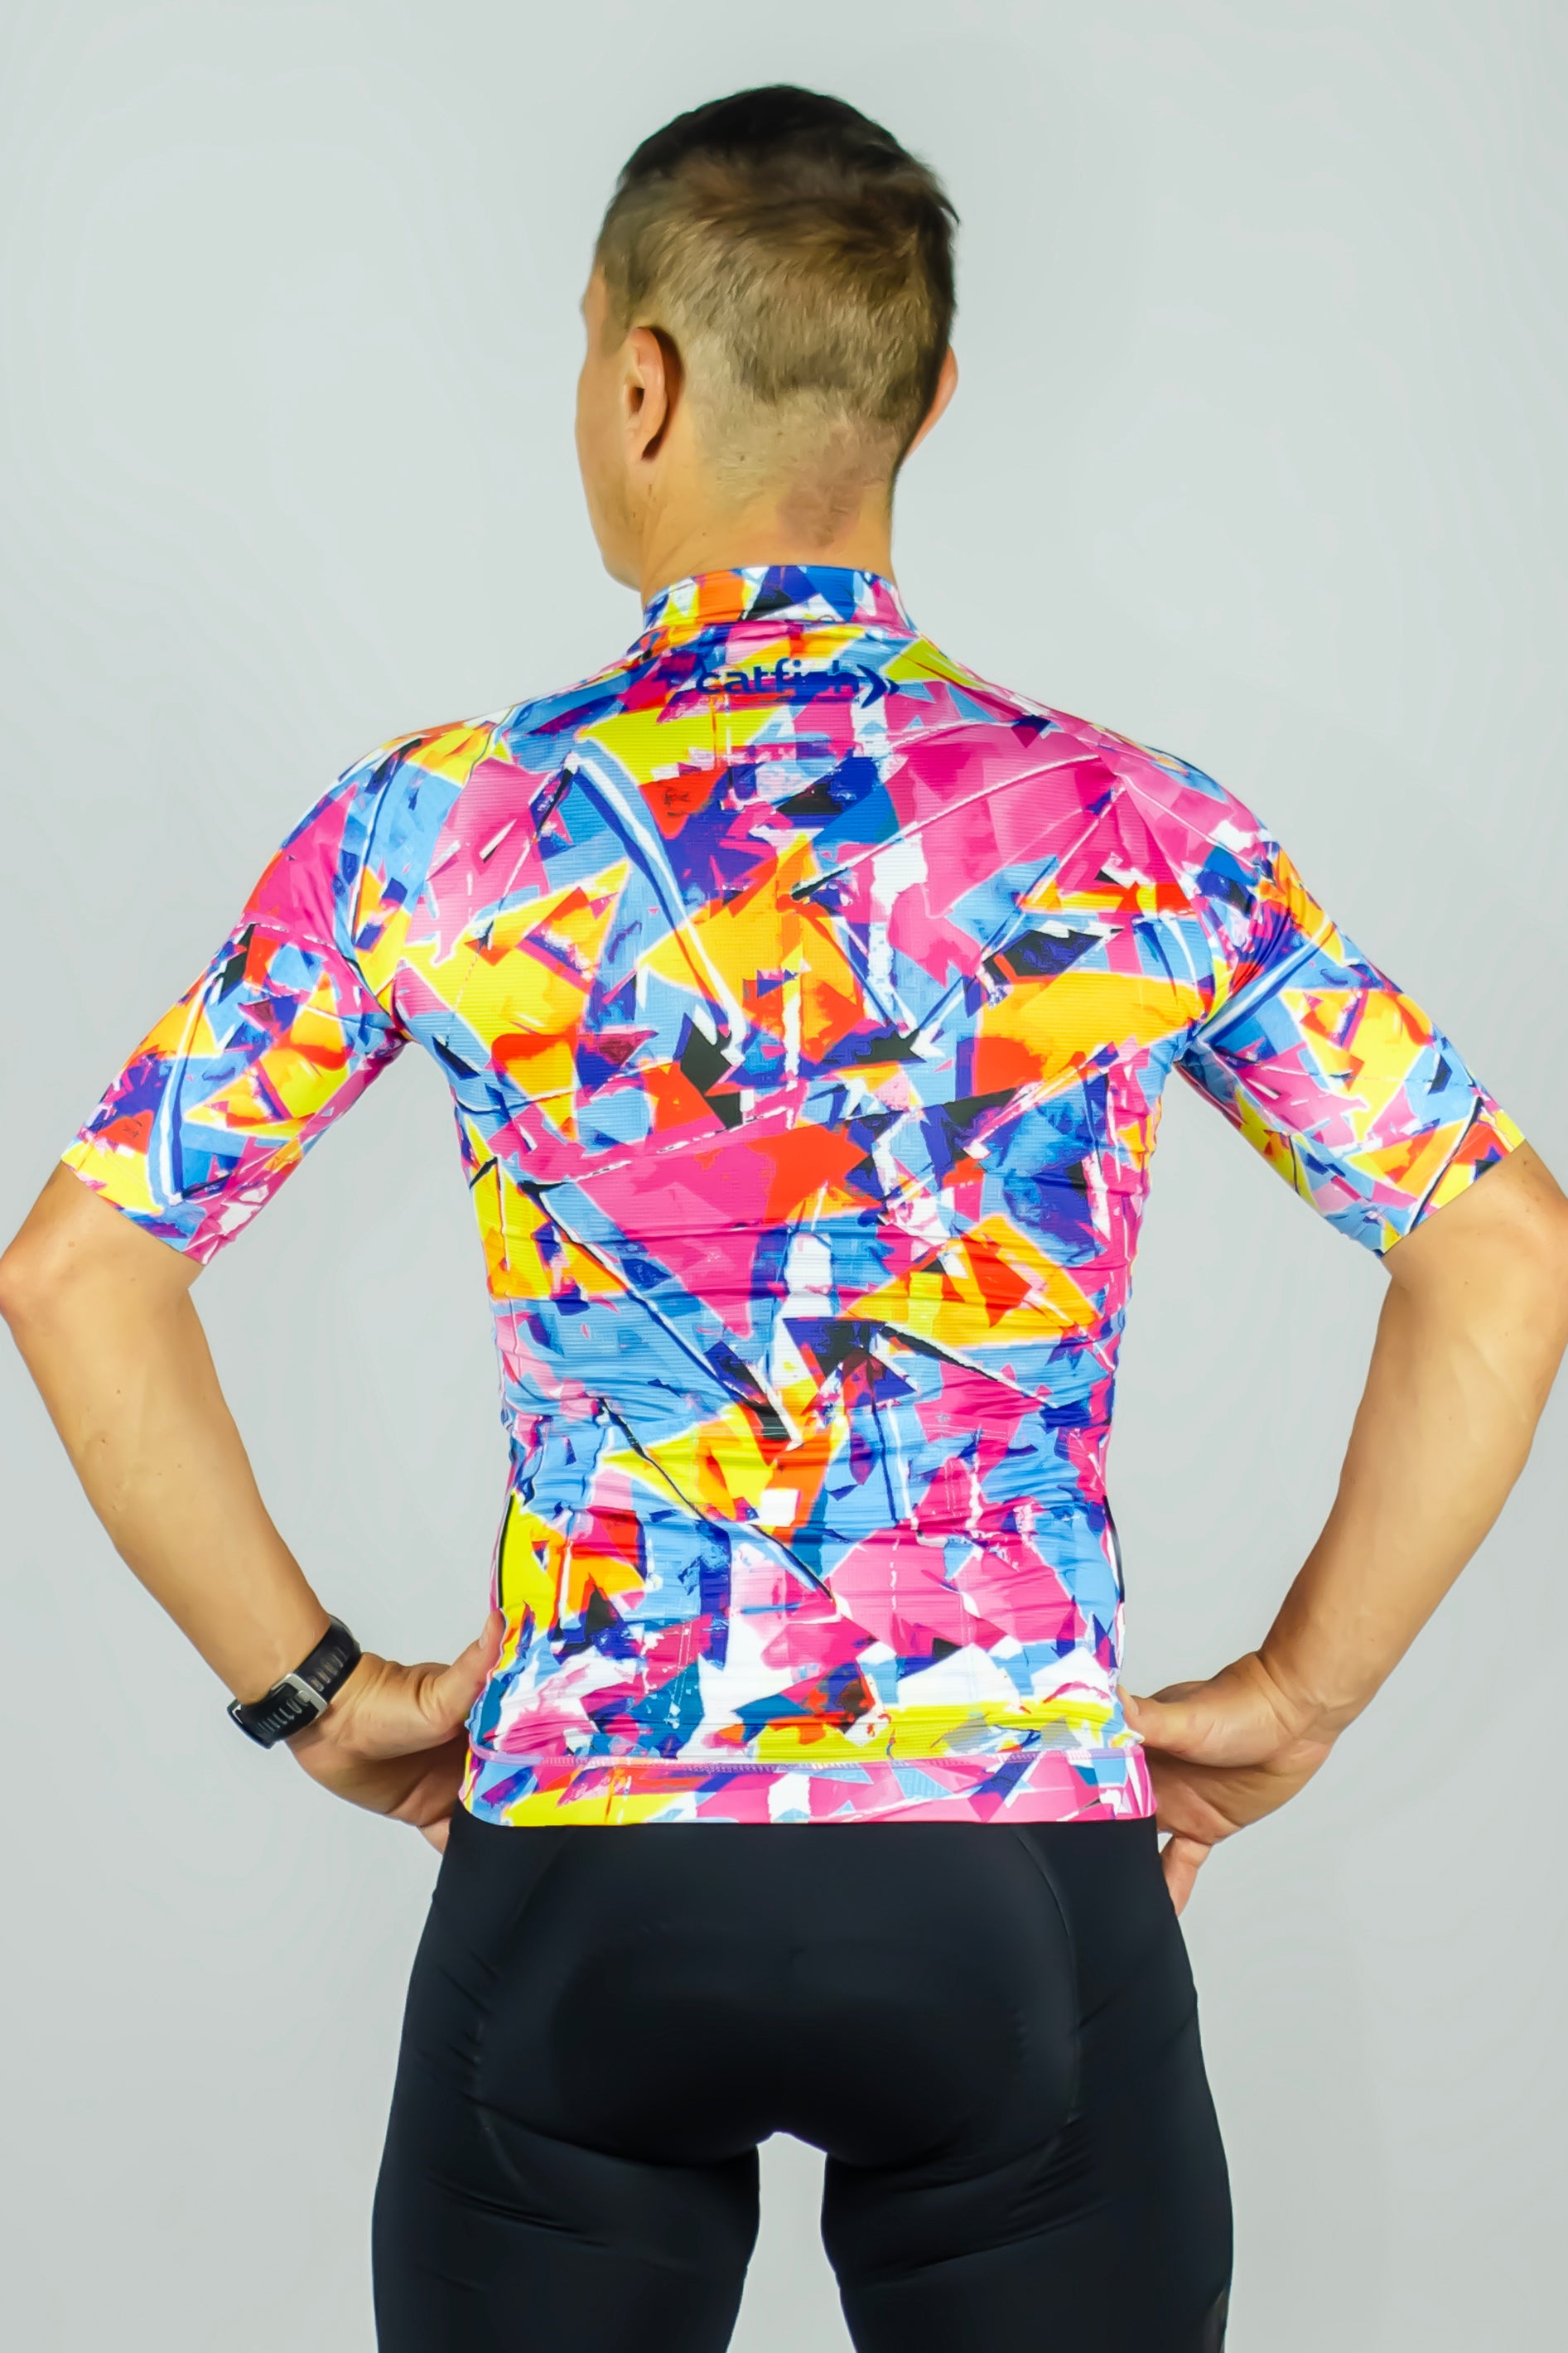 Confetti Men's Premium Cycle Jersey